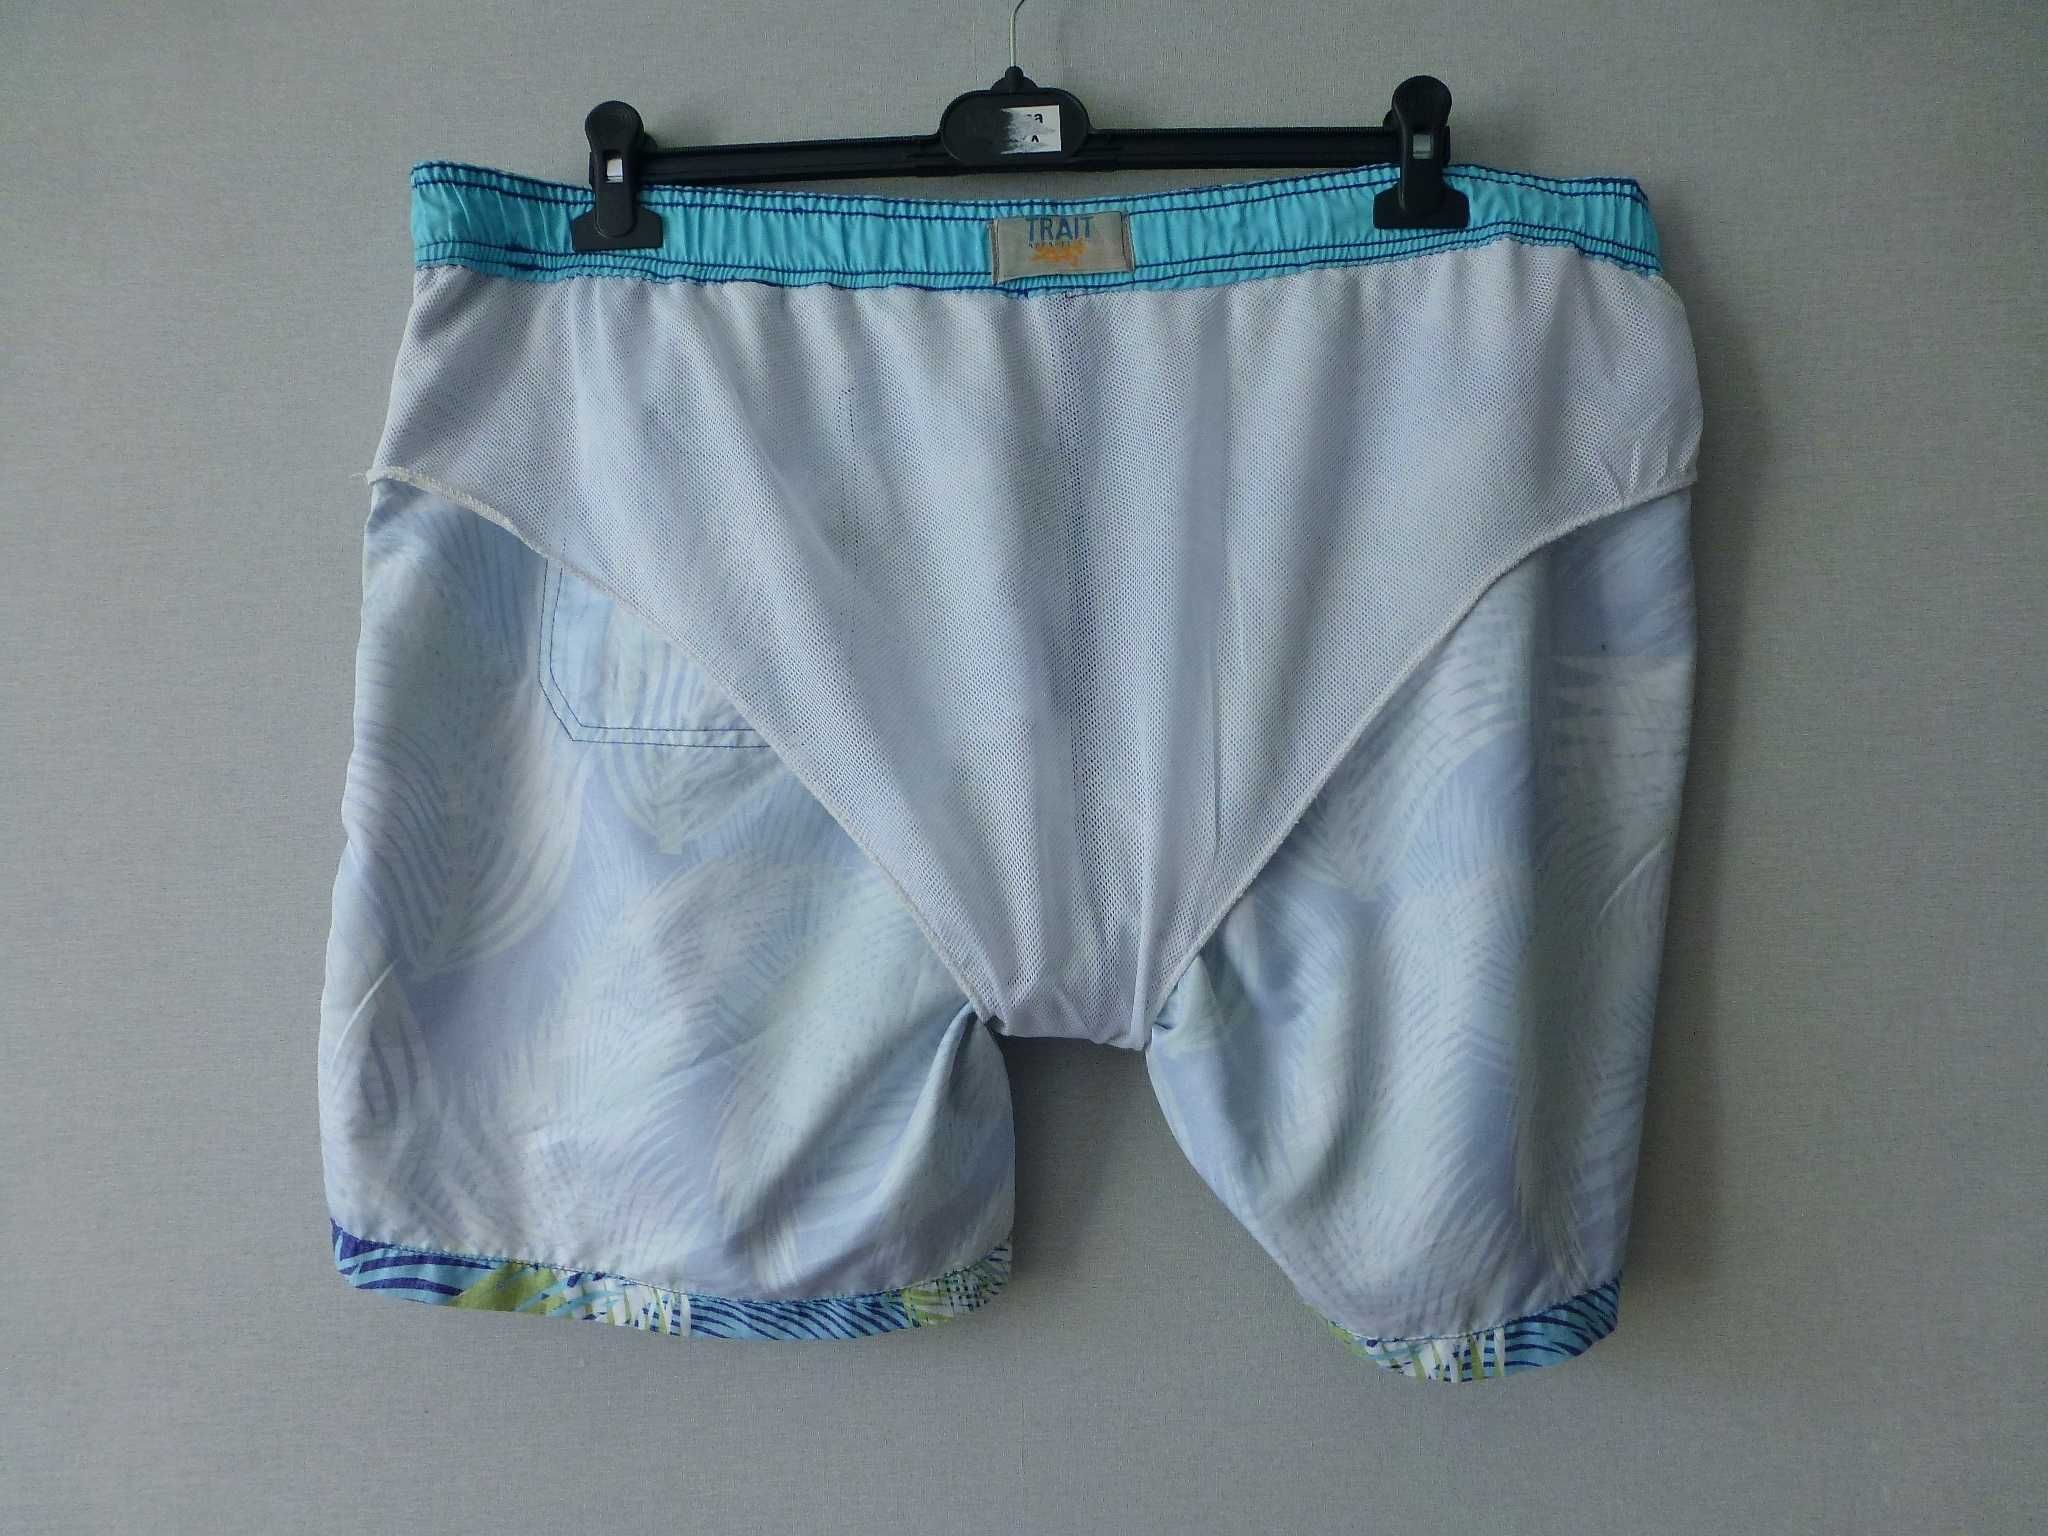 Bhs męskie szorty spodenki kąpielowe plażowe XL